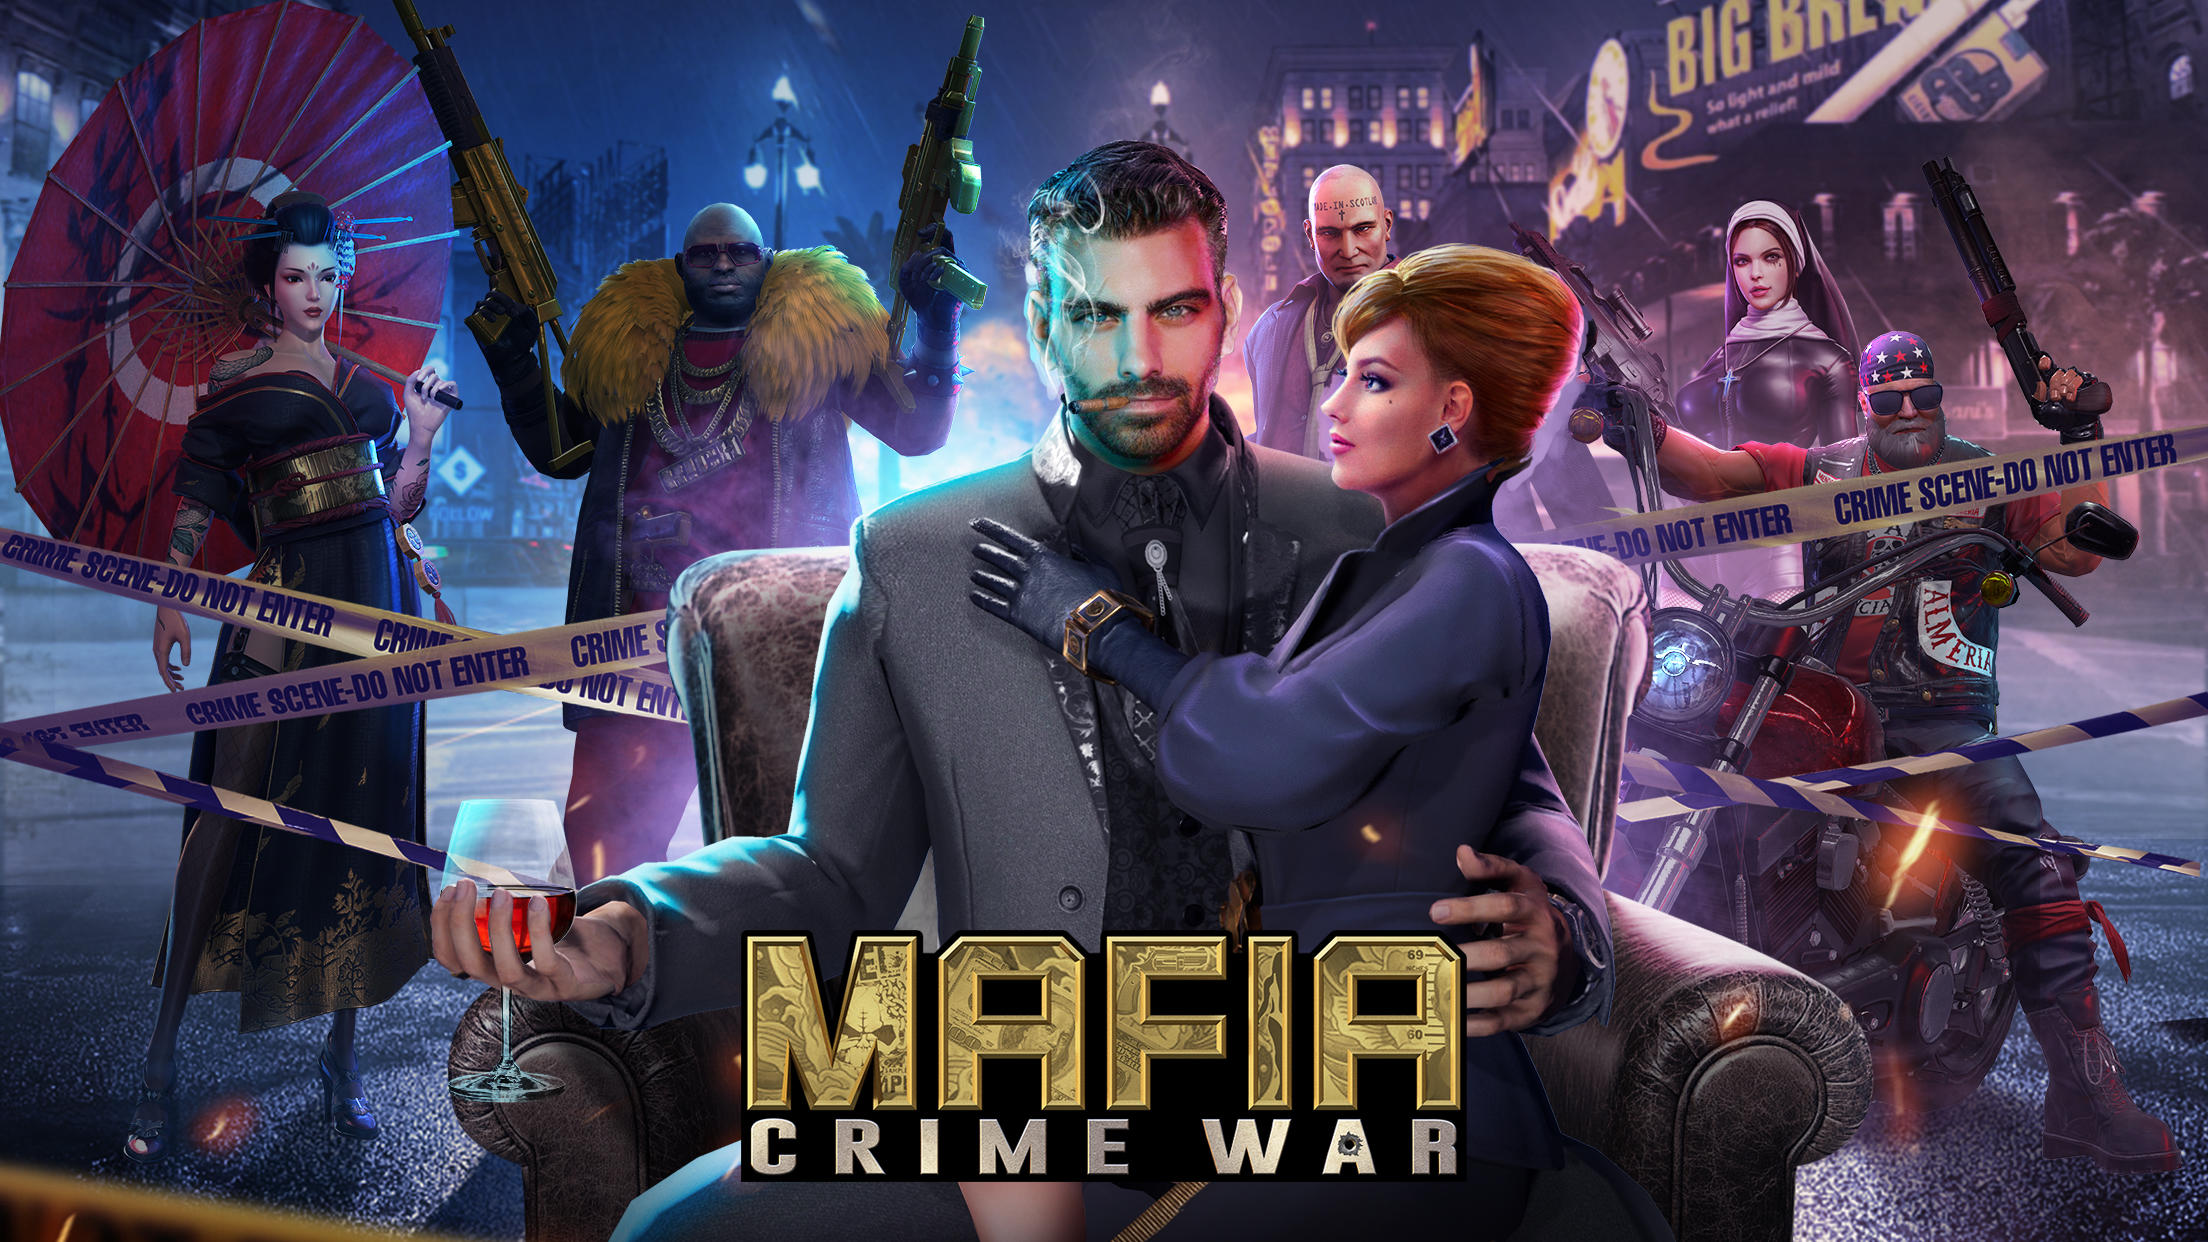 Screenshot 1 of Mafia: Verbrechenskrieg 1.5.0.5